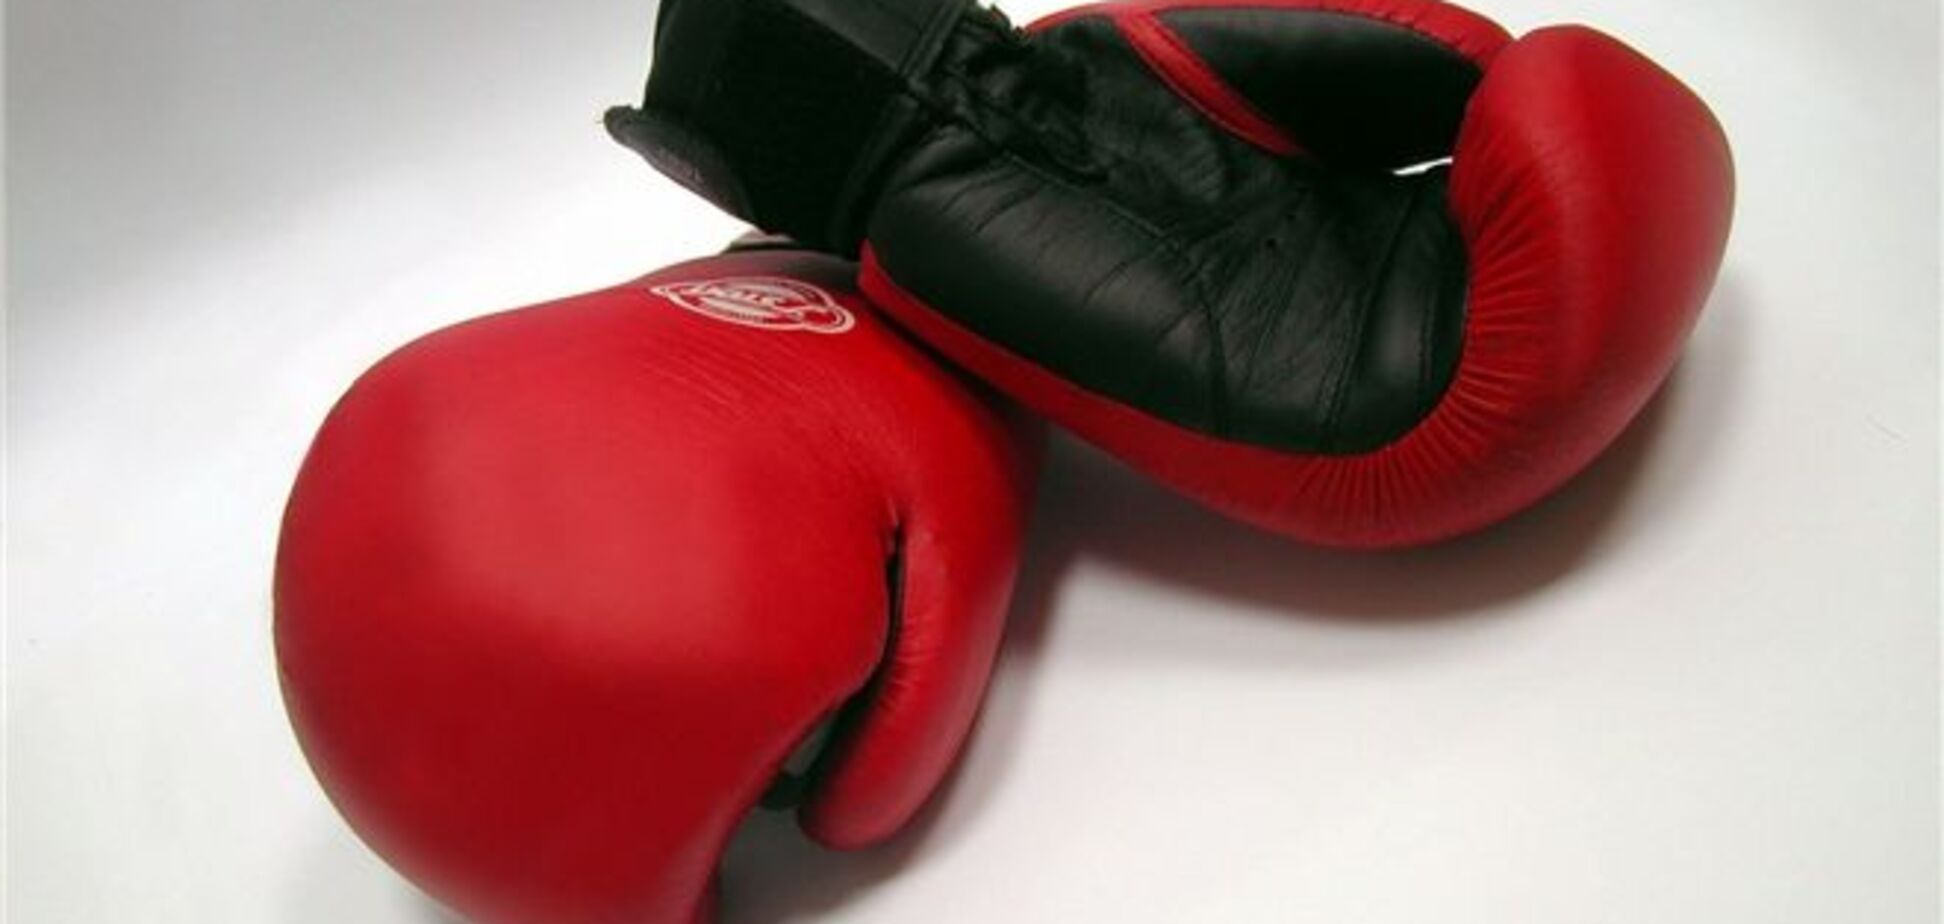 В Одессе чемпион по боксу избил милиционера